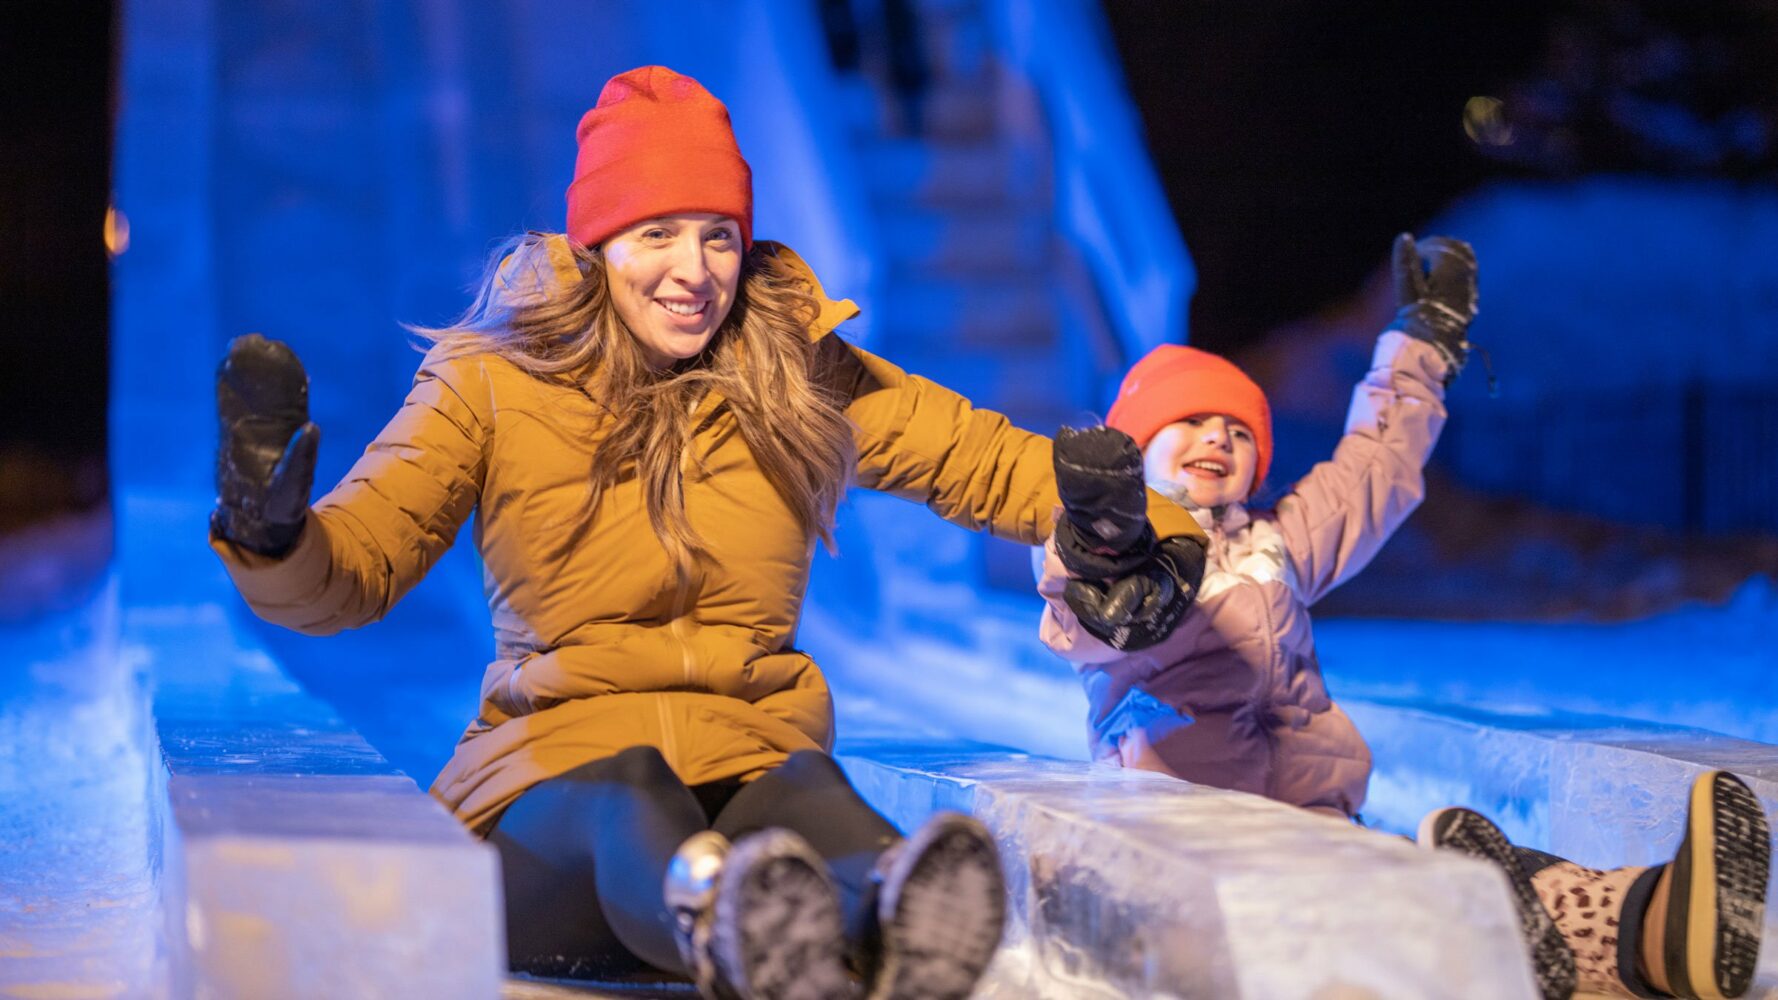 Une femme et une enfant qui glisse dans une énorme glissade de glace.